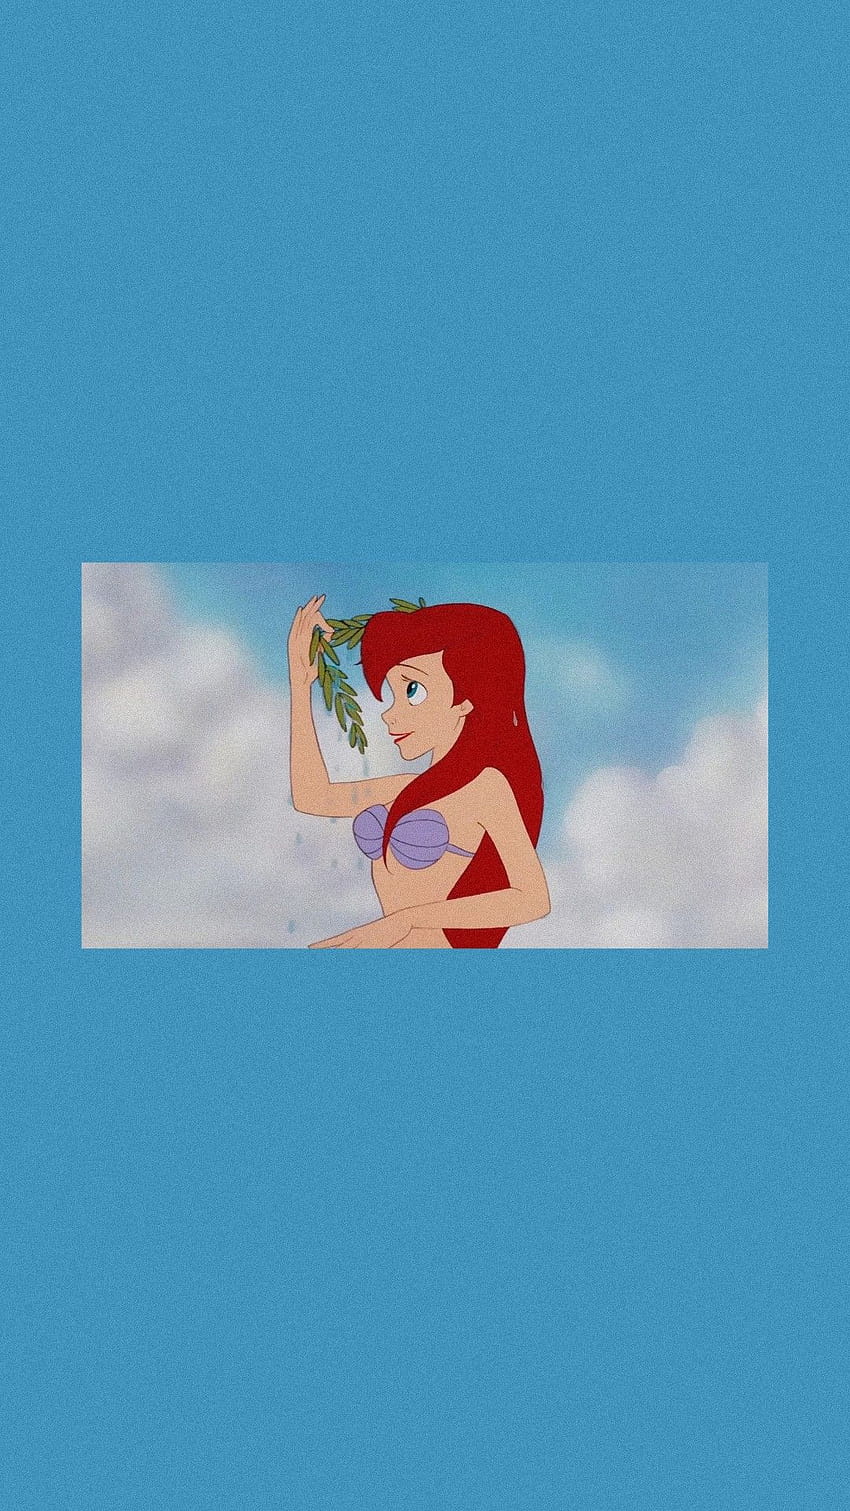 Ariel The Little Mermaid 1080P 2K 4K 5K HD wallpapers free download   Wallpaper Flare